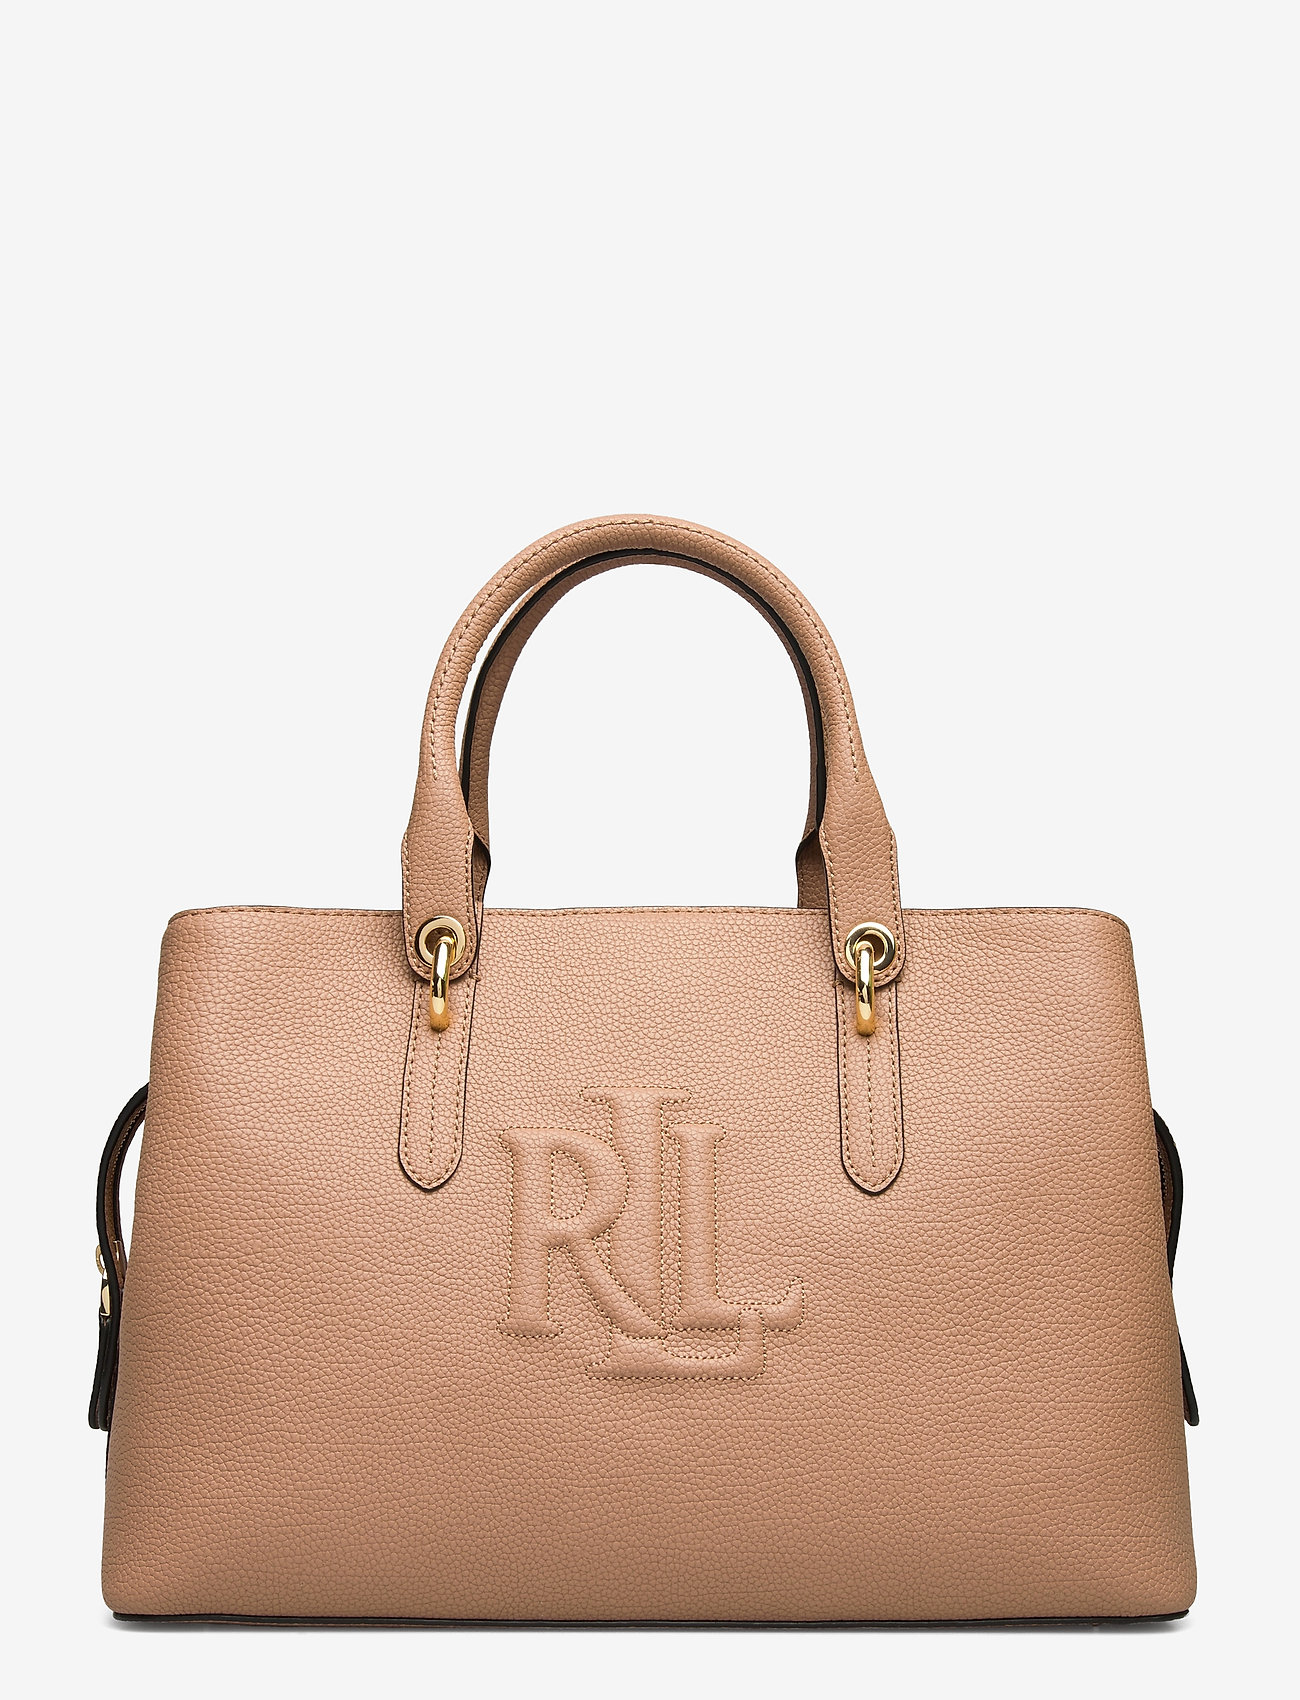 ralph lauren medium satchel